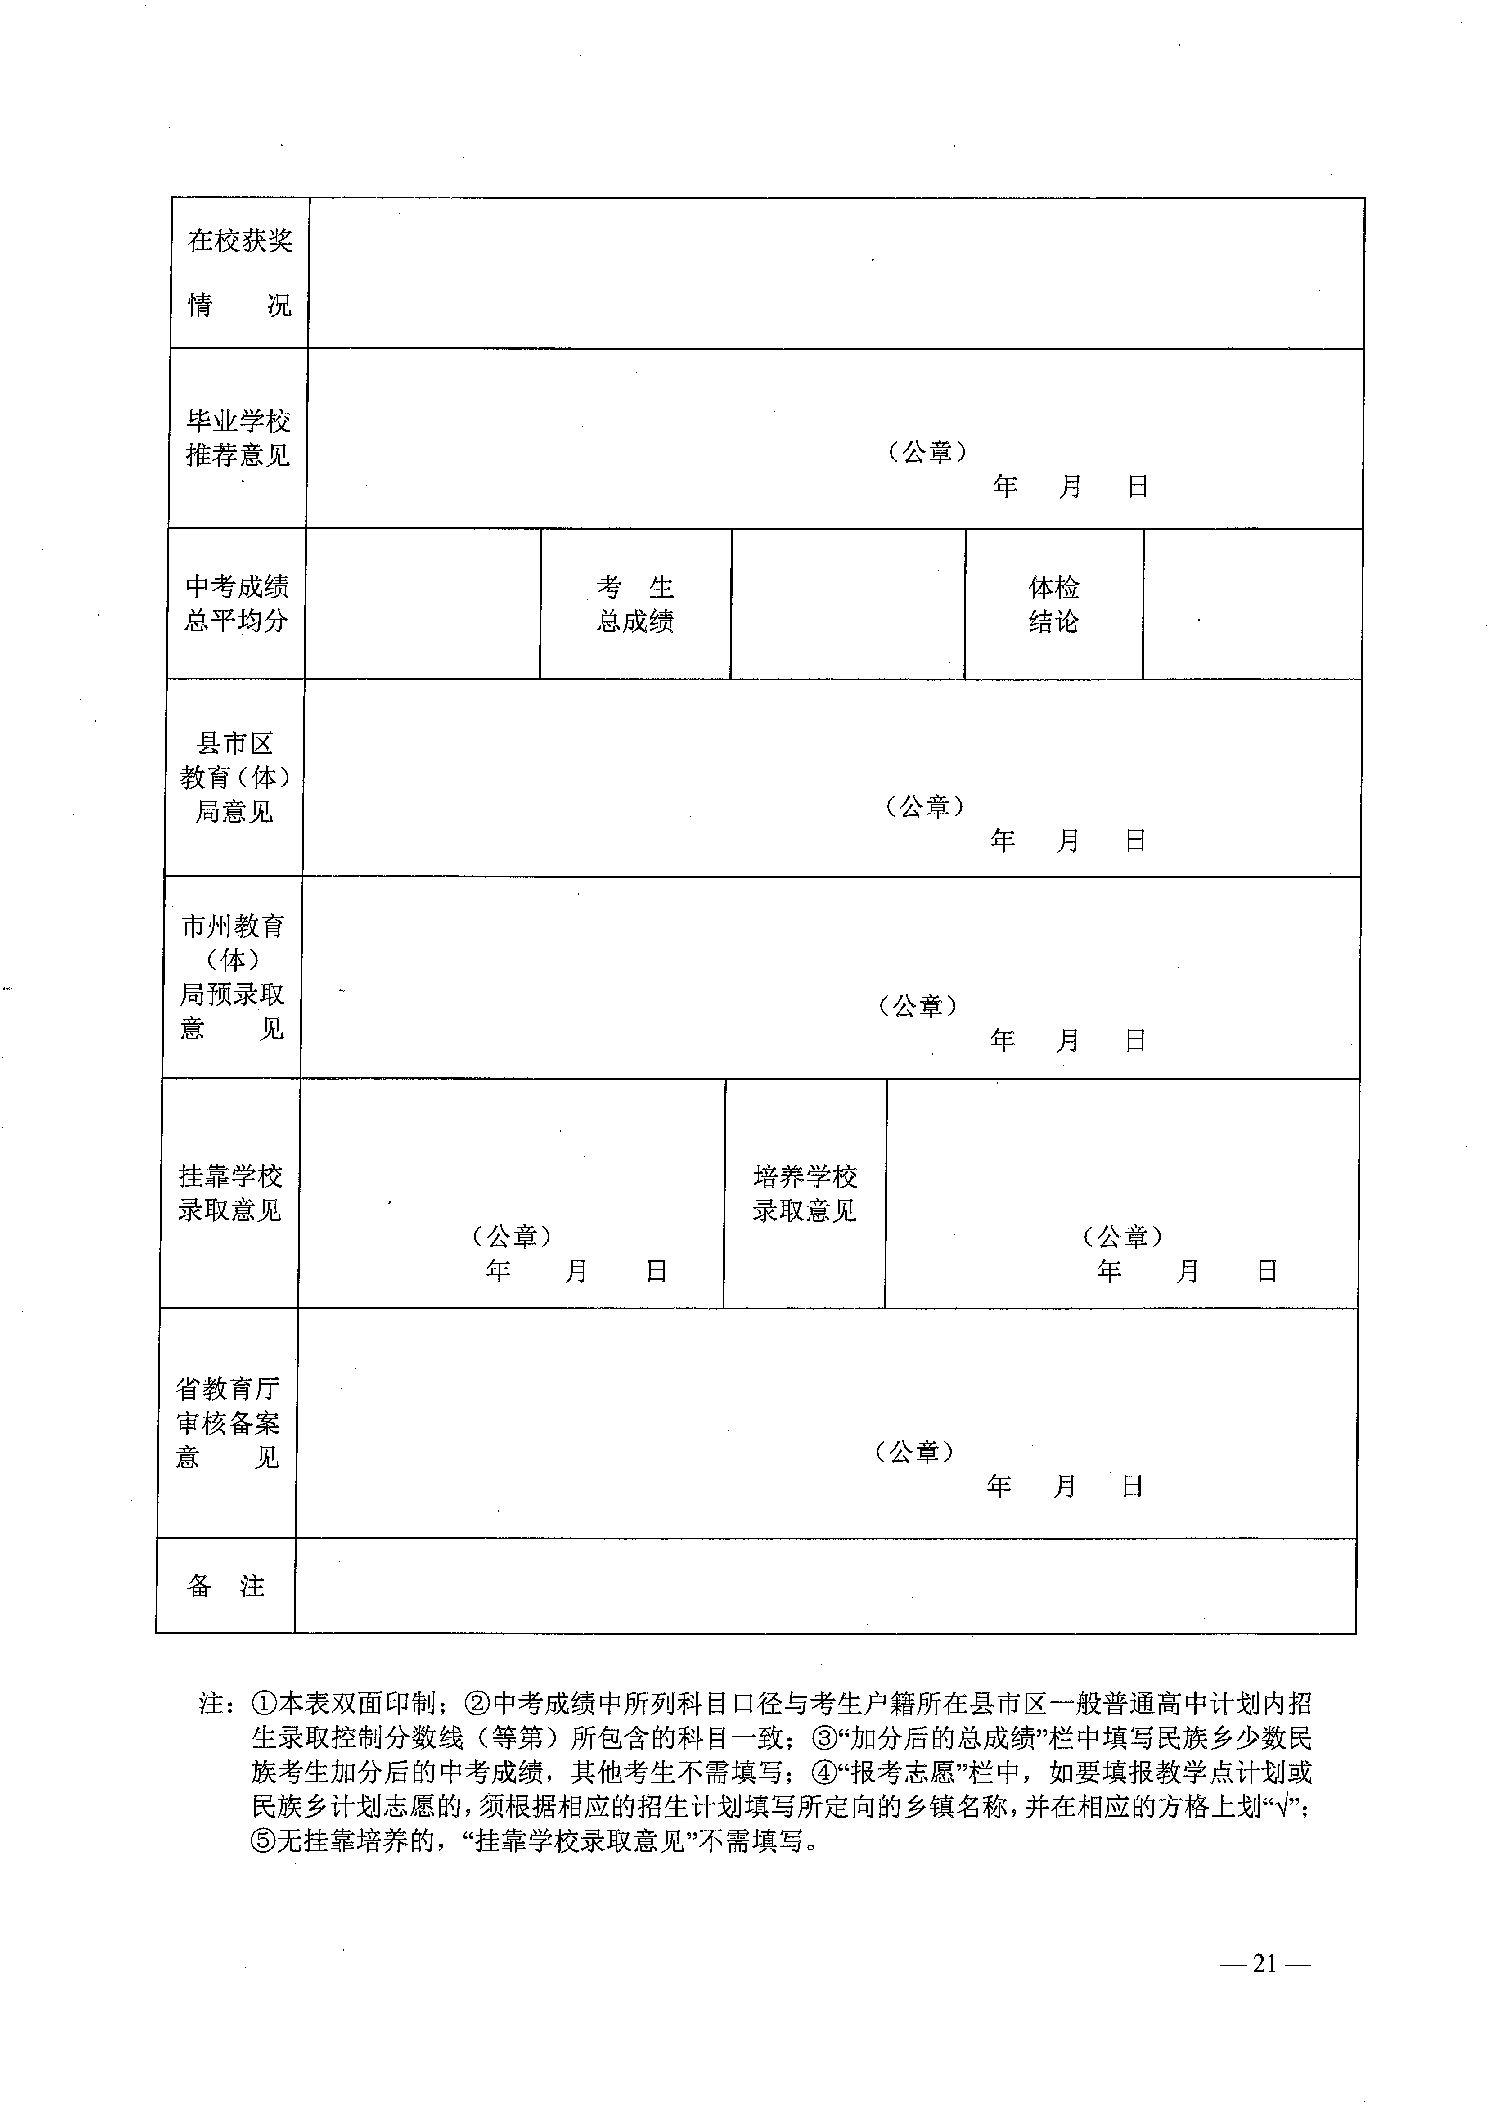 2022年嘉禾县乡村教师公费定向培养12名计划招生工作通知(图21)